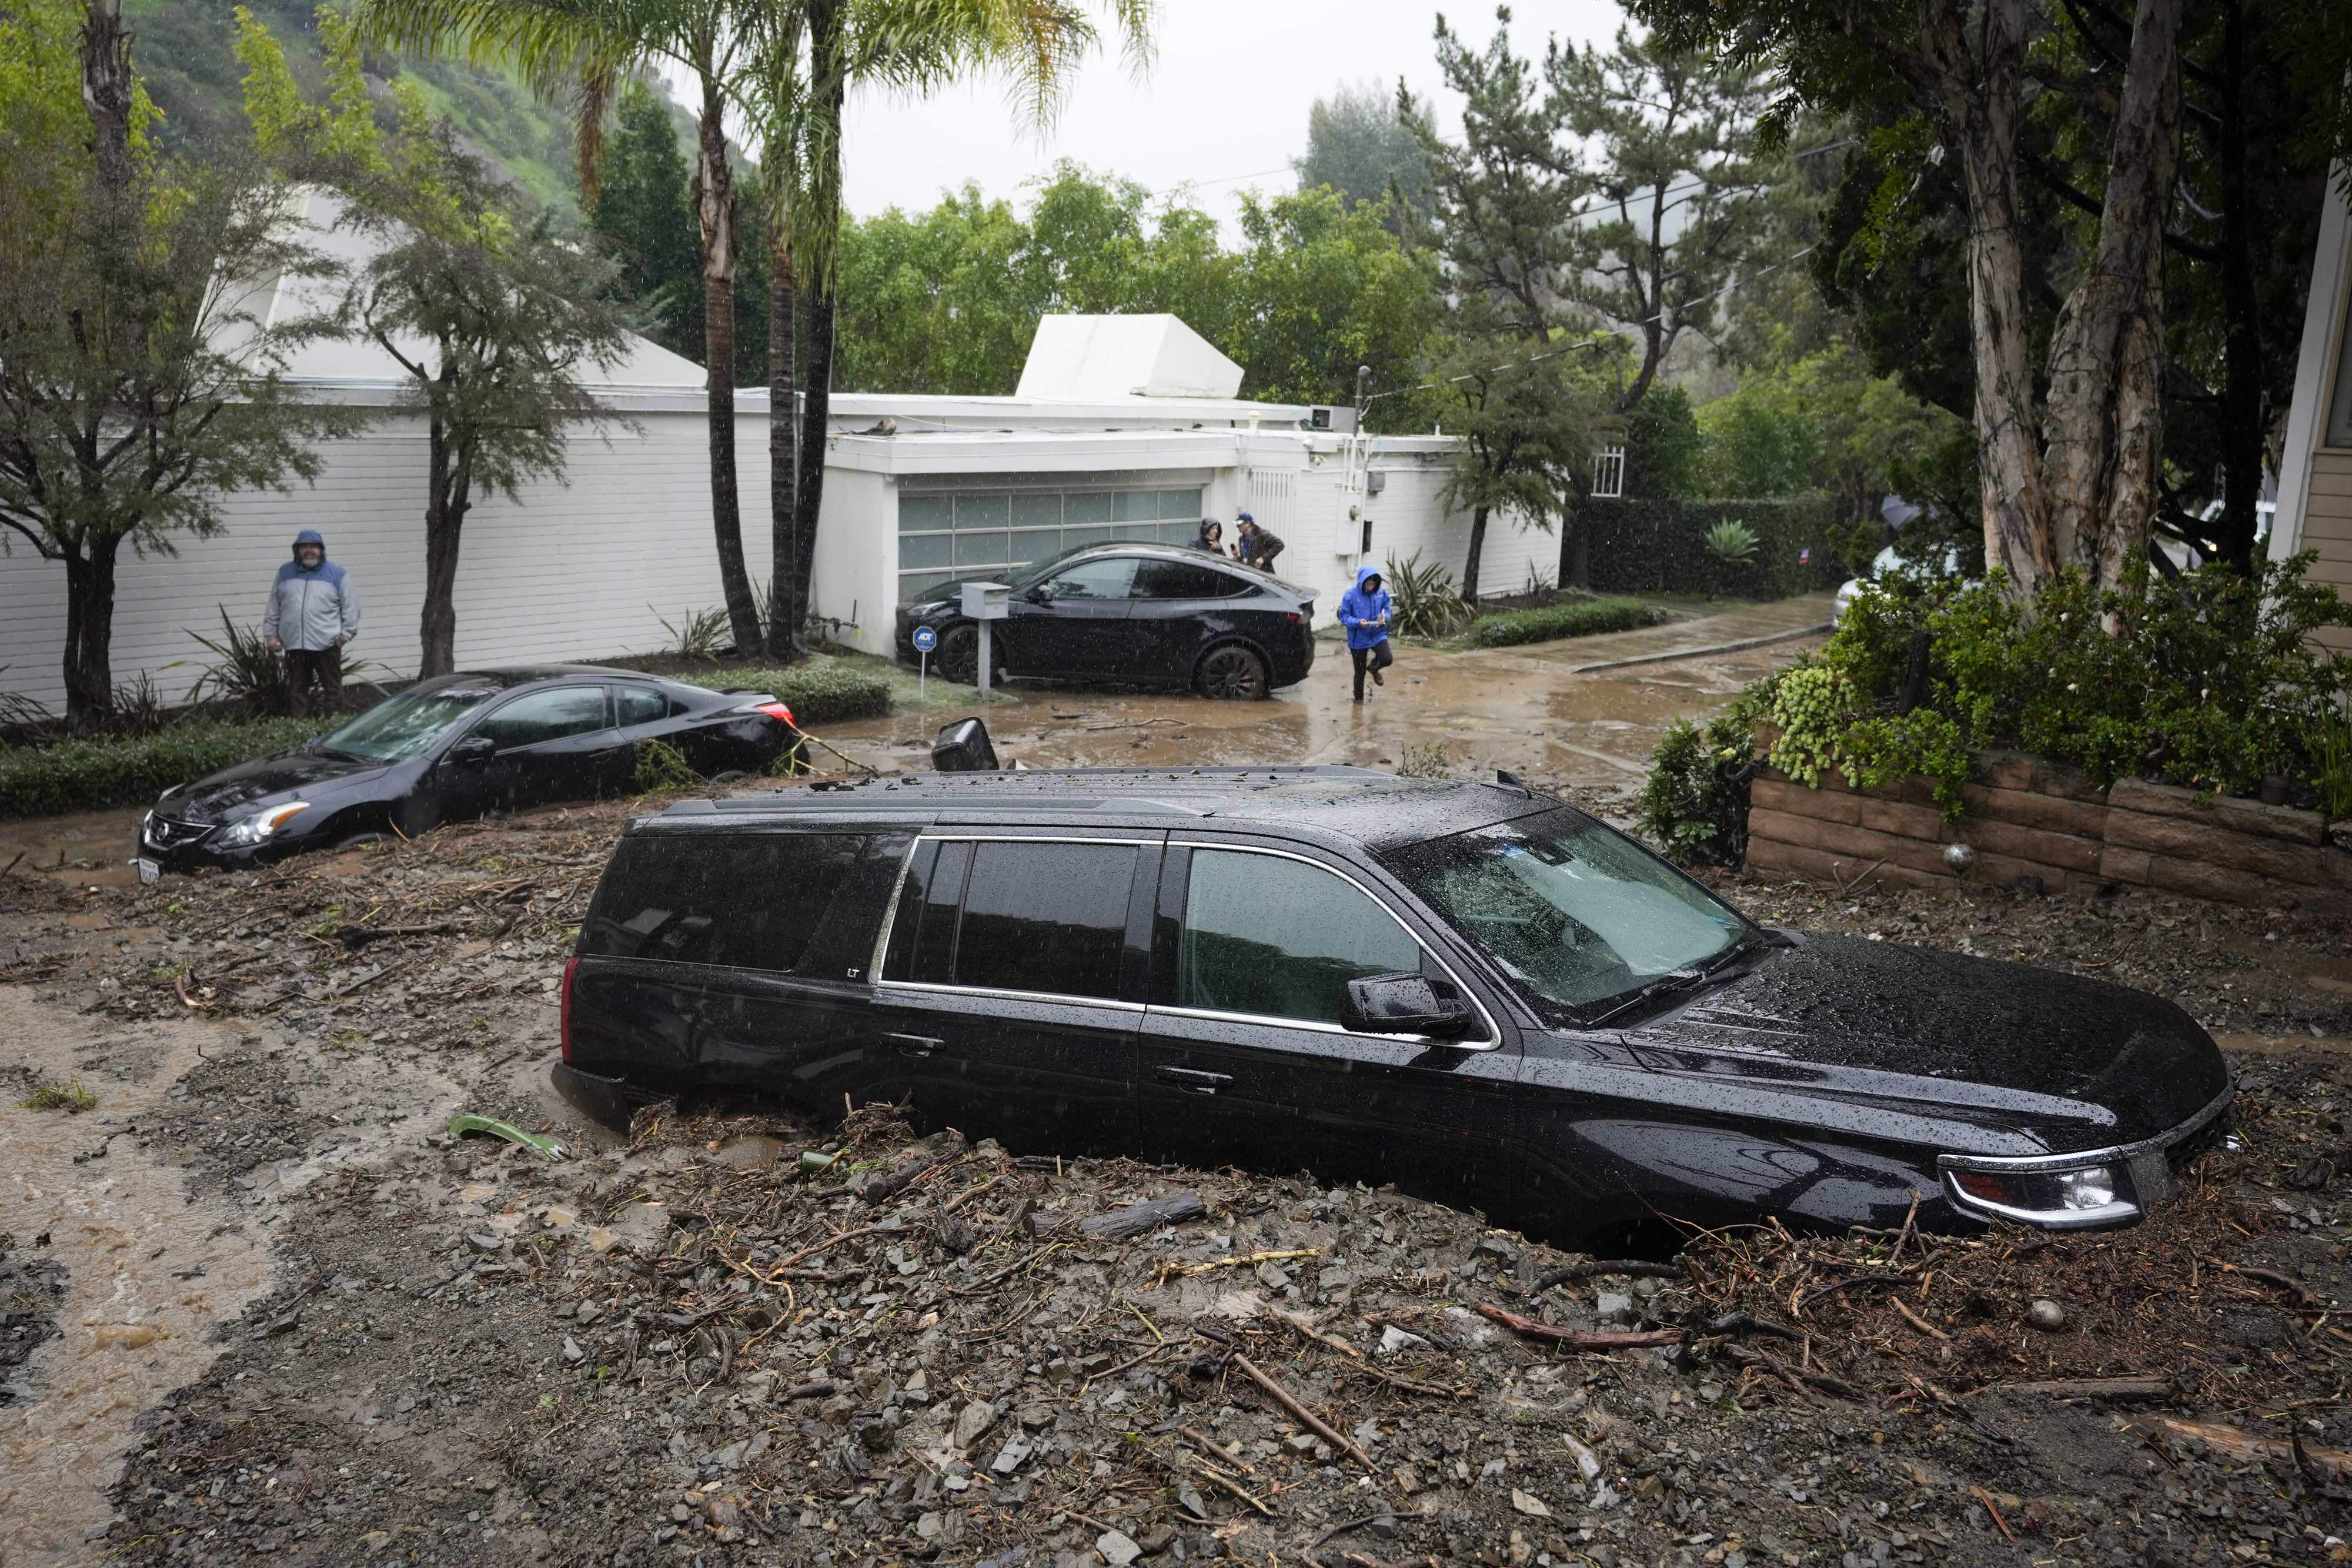 허리케인급 폭풍우가 미국 서부 캘리포니아를 강타한 5일(현지시간) 로스앤젤레스 베벌리 크레스트 지역 주택가로 쓸려 내려온 토사물에 차량들이 잠겨 있다. 캘리포니아에 광범위하게 역대급 폭우가 쏟아지면서 주택과 도로가 파손되고 인명 피해도 발생했다. 로스앤젤레스 AP 연합뉴스